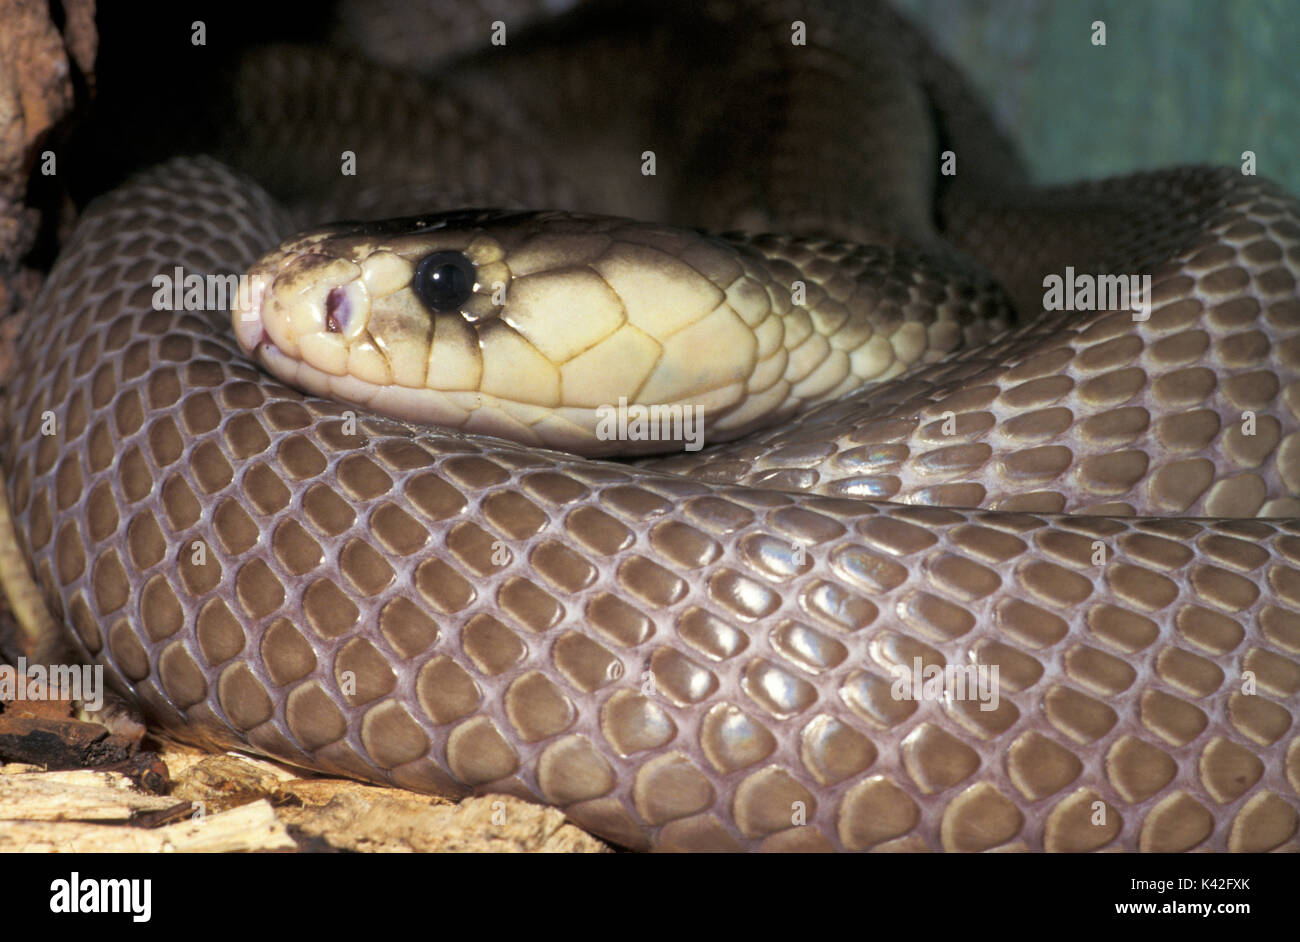 Indian Cobra Snake, Naja naja, India, Asian cobra o spectacled cobra è una specie del genere Naja trovati nel subcontinente indiano, venemous captiv Foto Stock